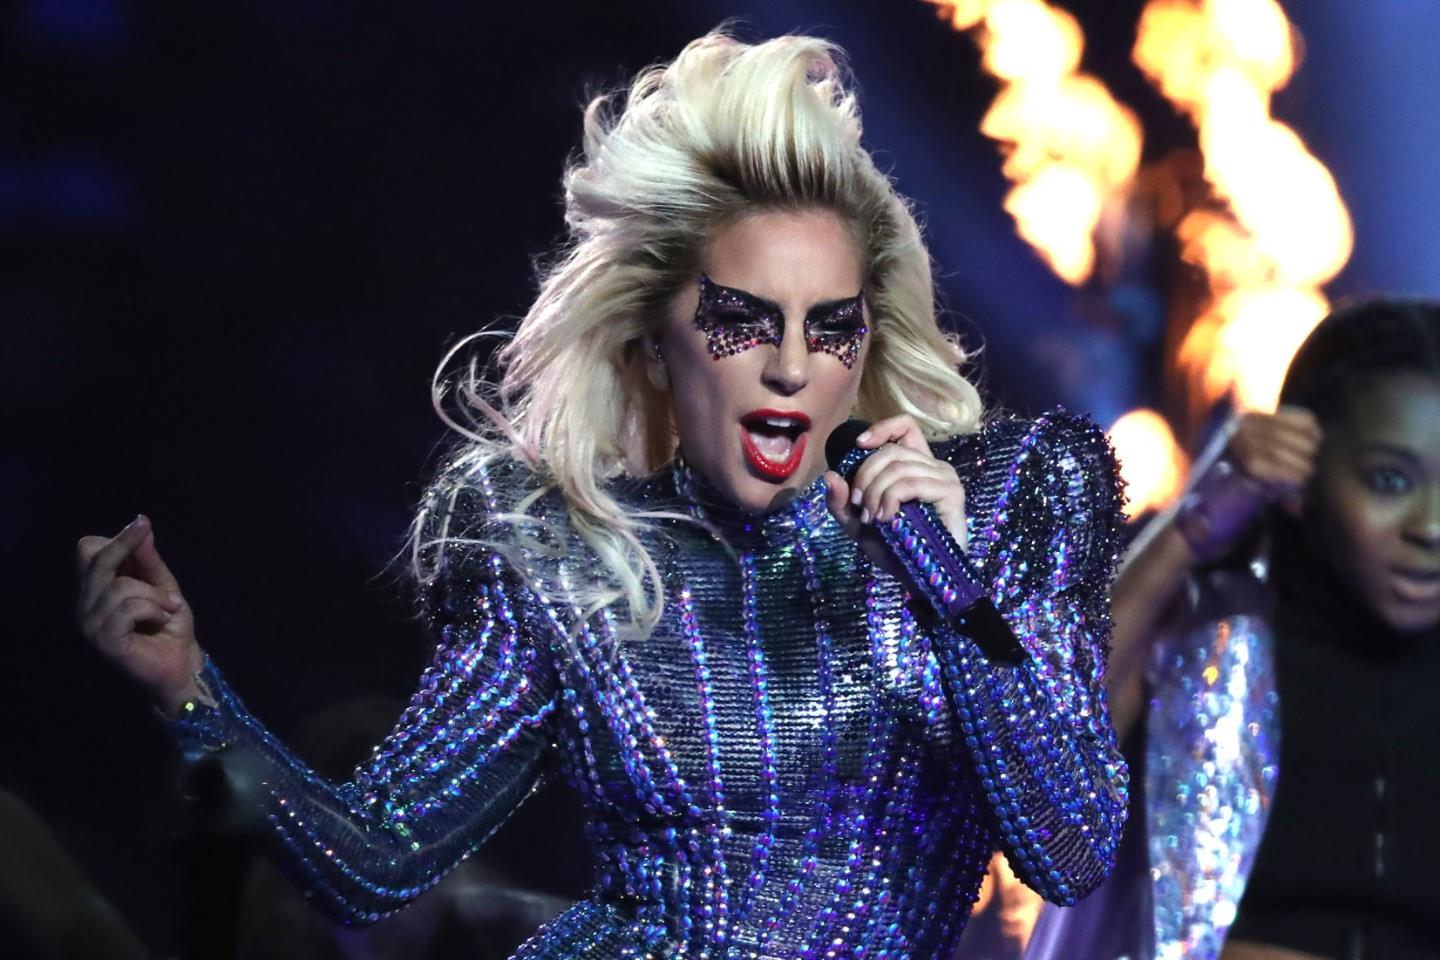 mtv vmas,lady gaga,chromatica,atuação, MTV VMAs: Lady Gaga vai levar “Chromatica” à cerimónia